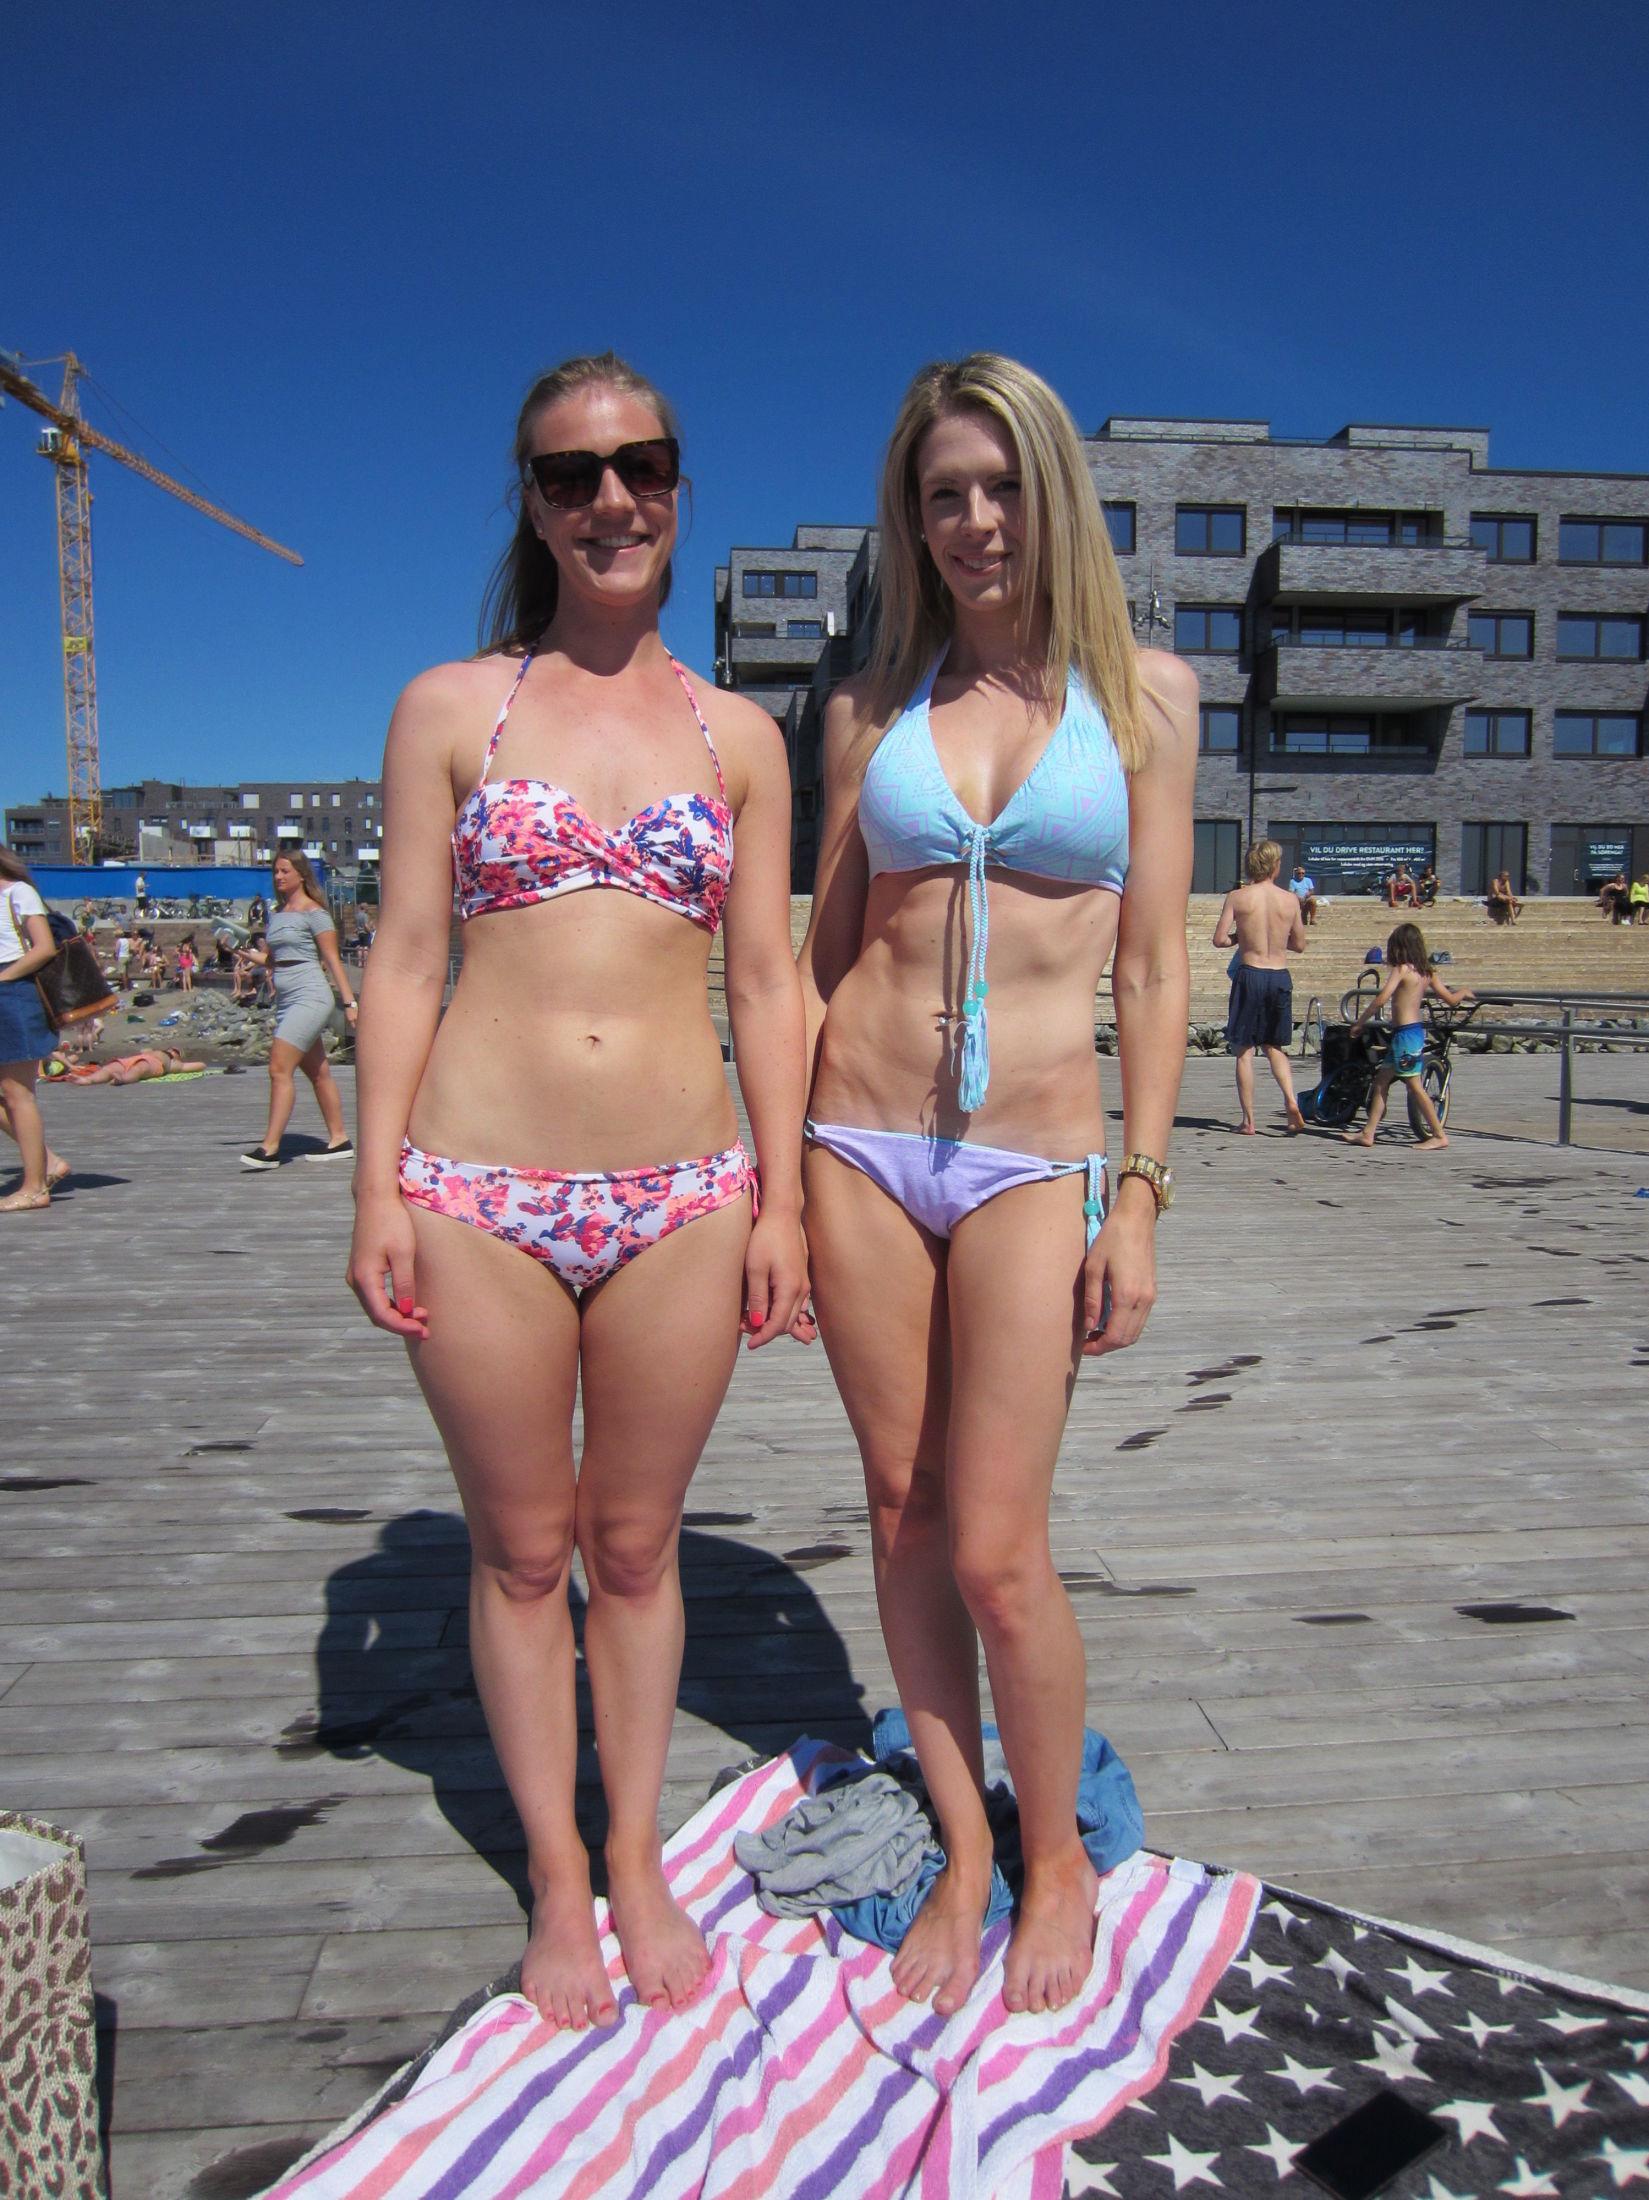 Fra venstre: Ulrikke Viksveen (26) er iført bikini fra H&M, og mener det meste er fint så lenge man er solbrun. - Hvis man har skikkelig brunfarge kler man det aller meste, men det verste jeg ser er g-streng-bikini på damer. Rikke Størebø (26), har på seg en lyseblå bikini fra Victoria’s Secret. - Bikinier i freshe farger og de som har skikkelig tan, mener jeg er det absolutt flotteste. Jeg synes at badeshortsene ikke må være for store, eller altfor korte og trange. Foto: Thea Roll Rakeng/MinMote